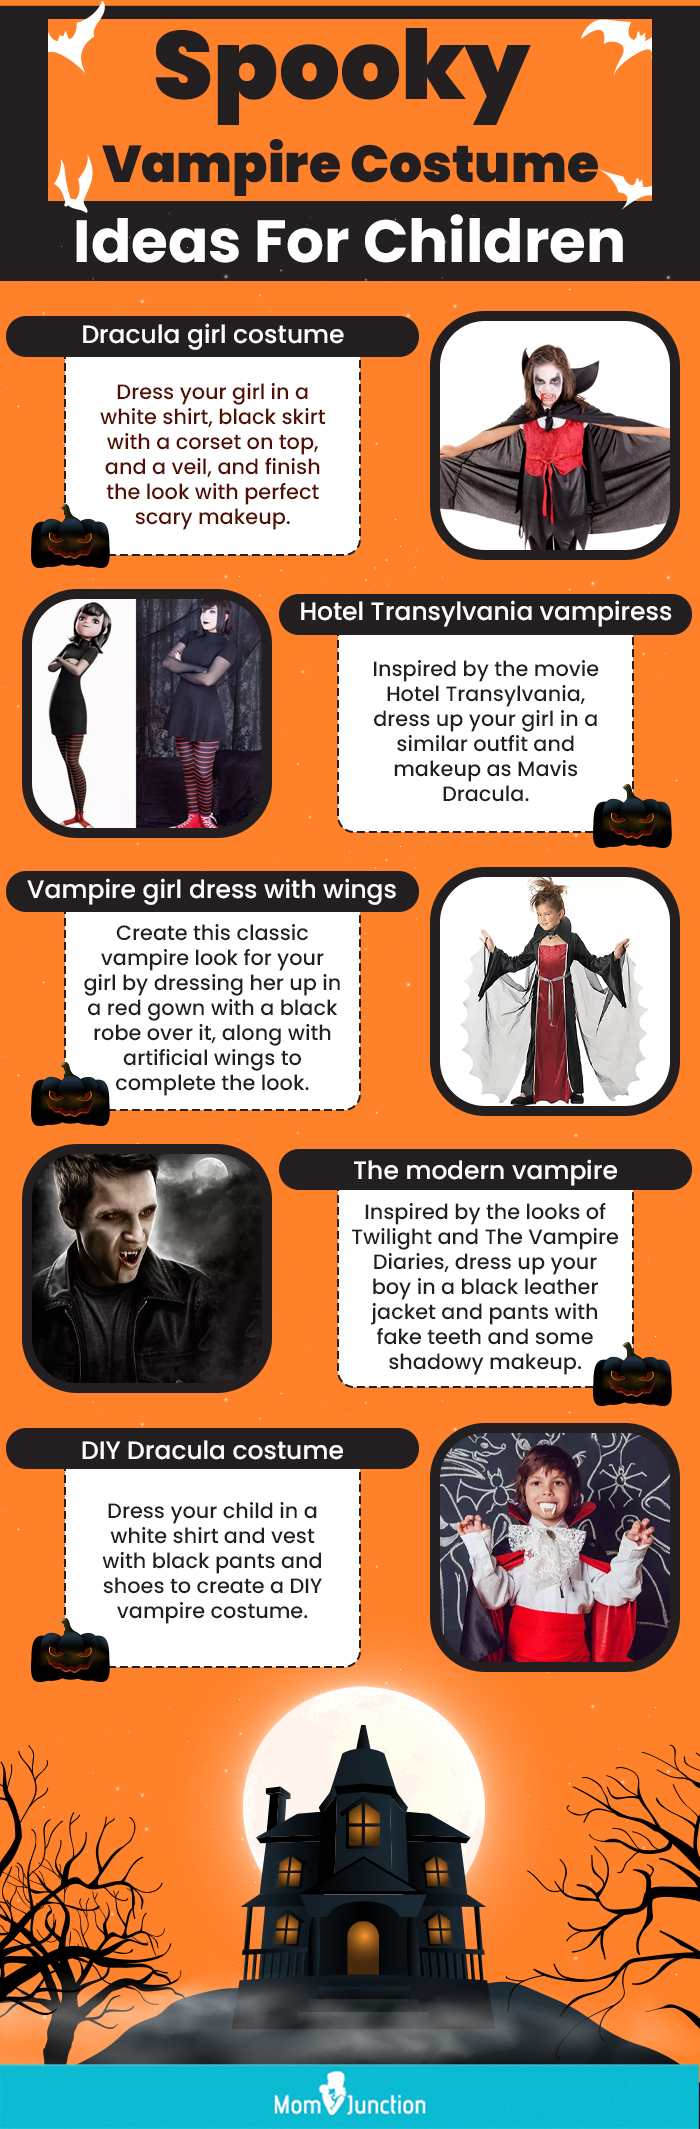 homemade vampire costume